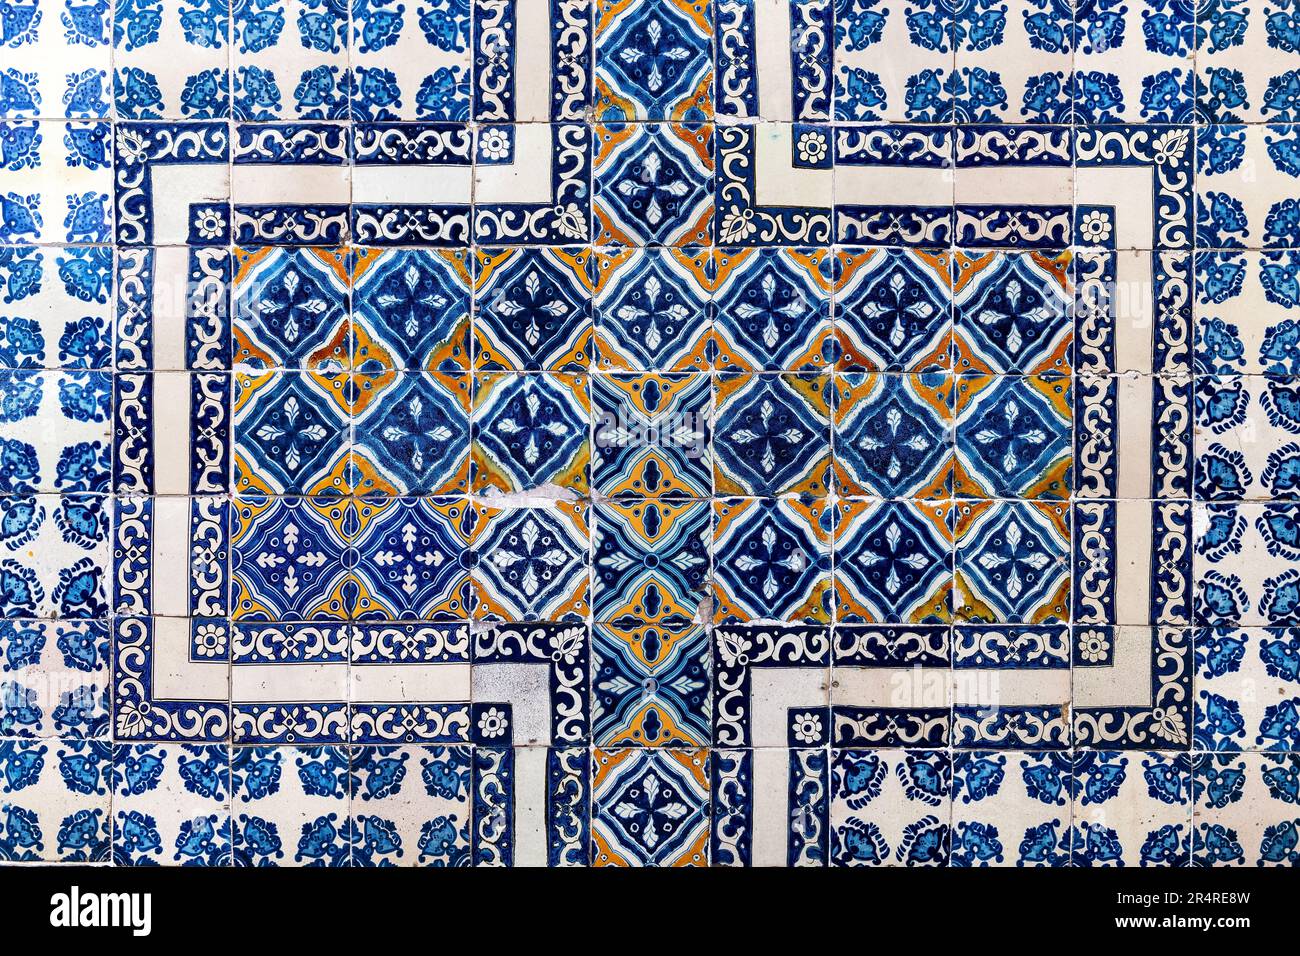 Tin glazed ceramic tiles on House of Tiles (Casa de los Azulejos) facade, Mexico City, Mexico. Stock Photo